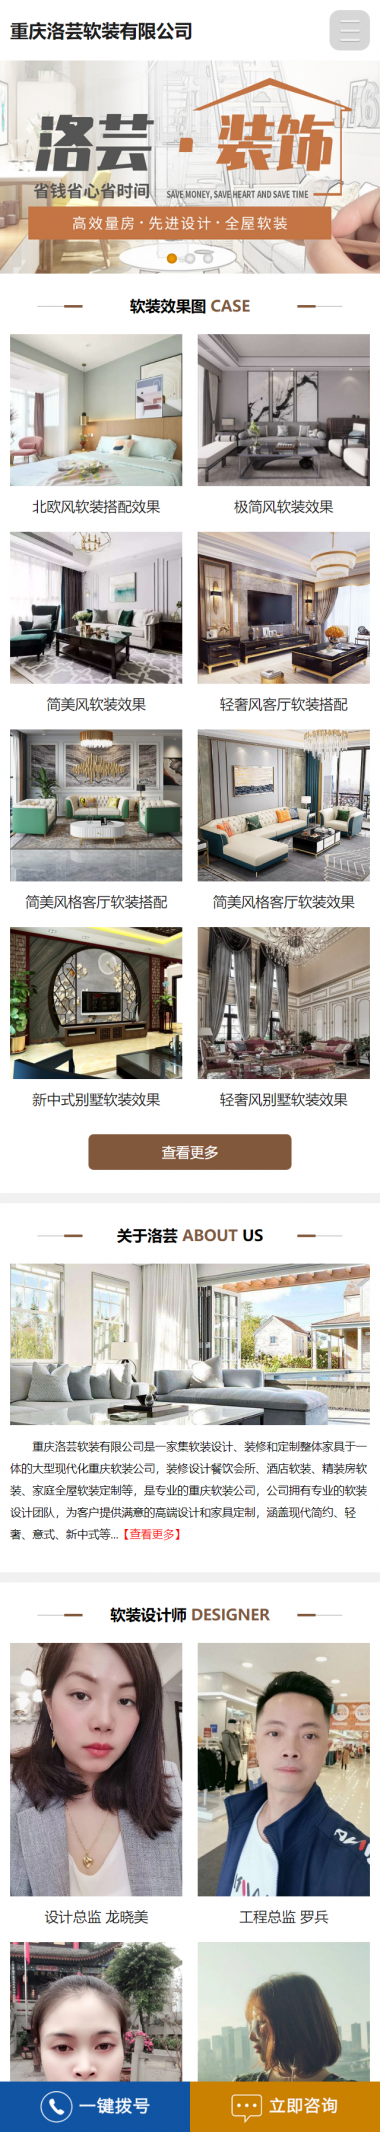 重庆洛芸软装有限公司手机站网站建设案例